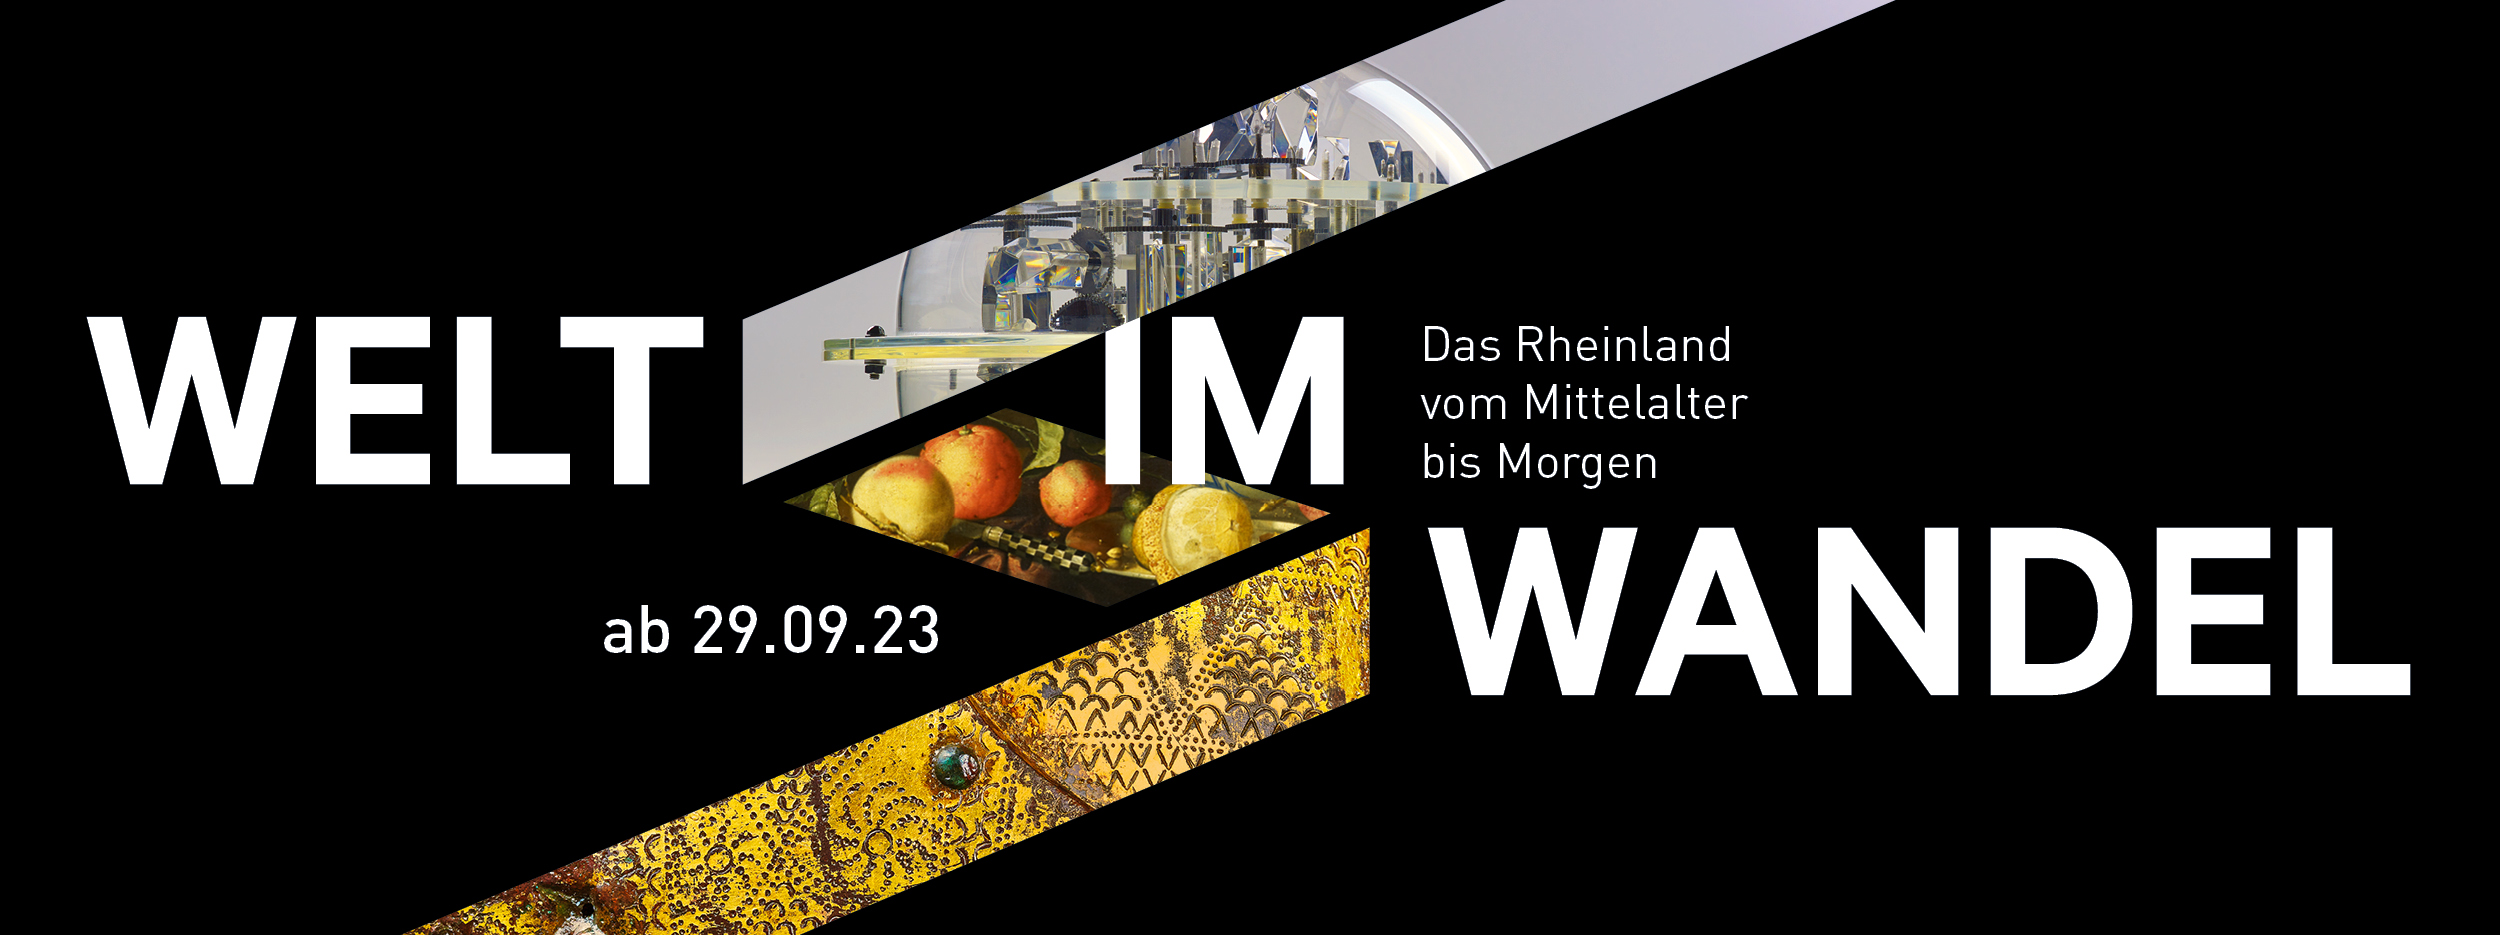 Das Kampagnenmotiv zur Eröffnung der neuen Dauerausstellung im LVR-LandesMuseum Bonn. Es zeigt den Titel 